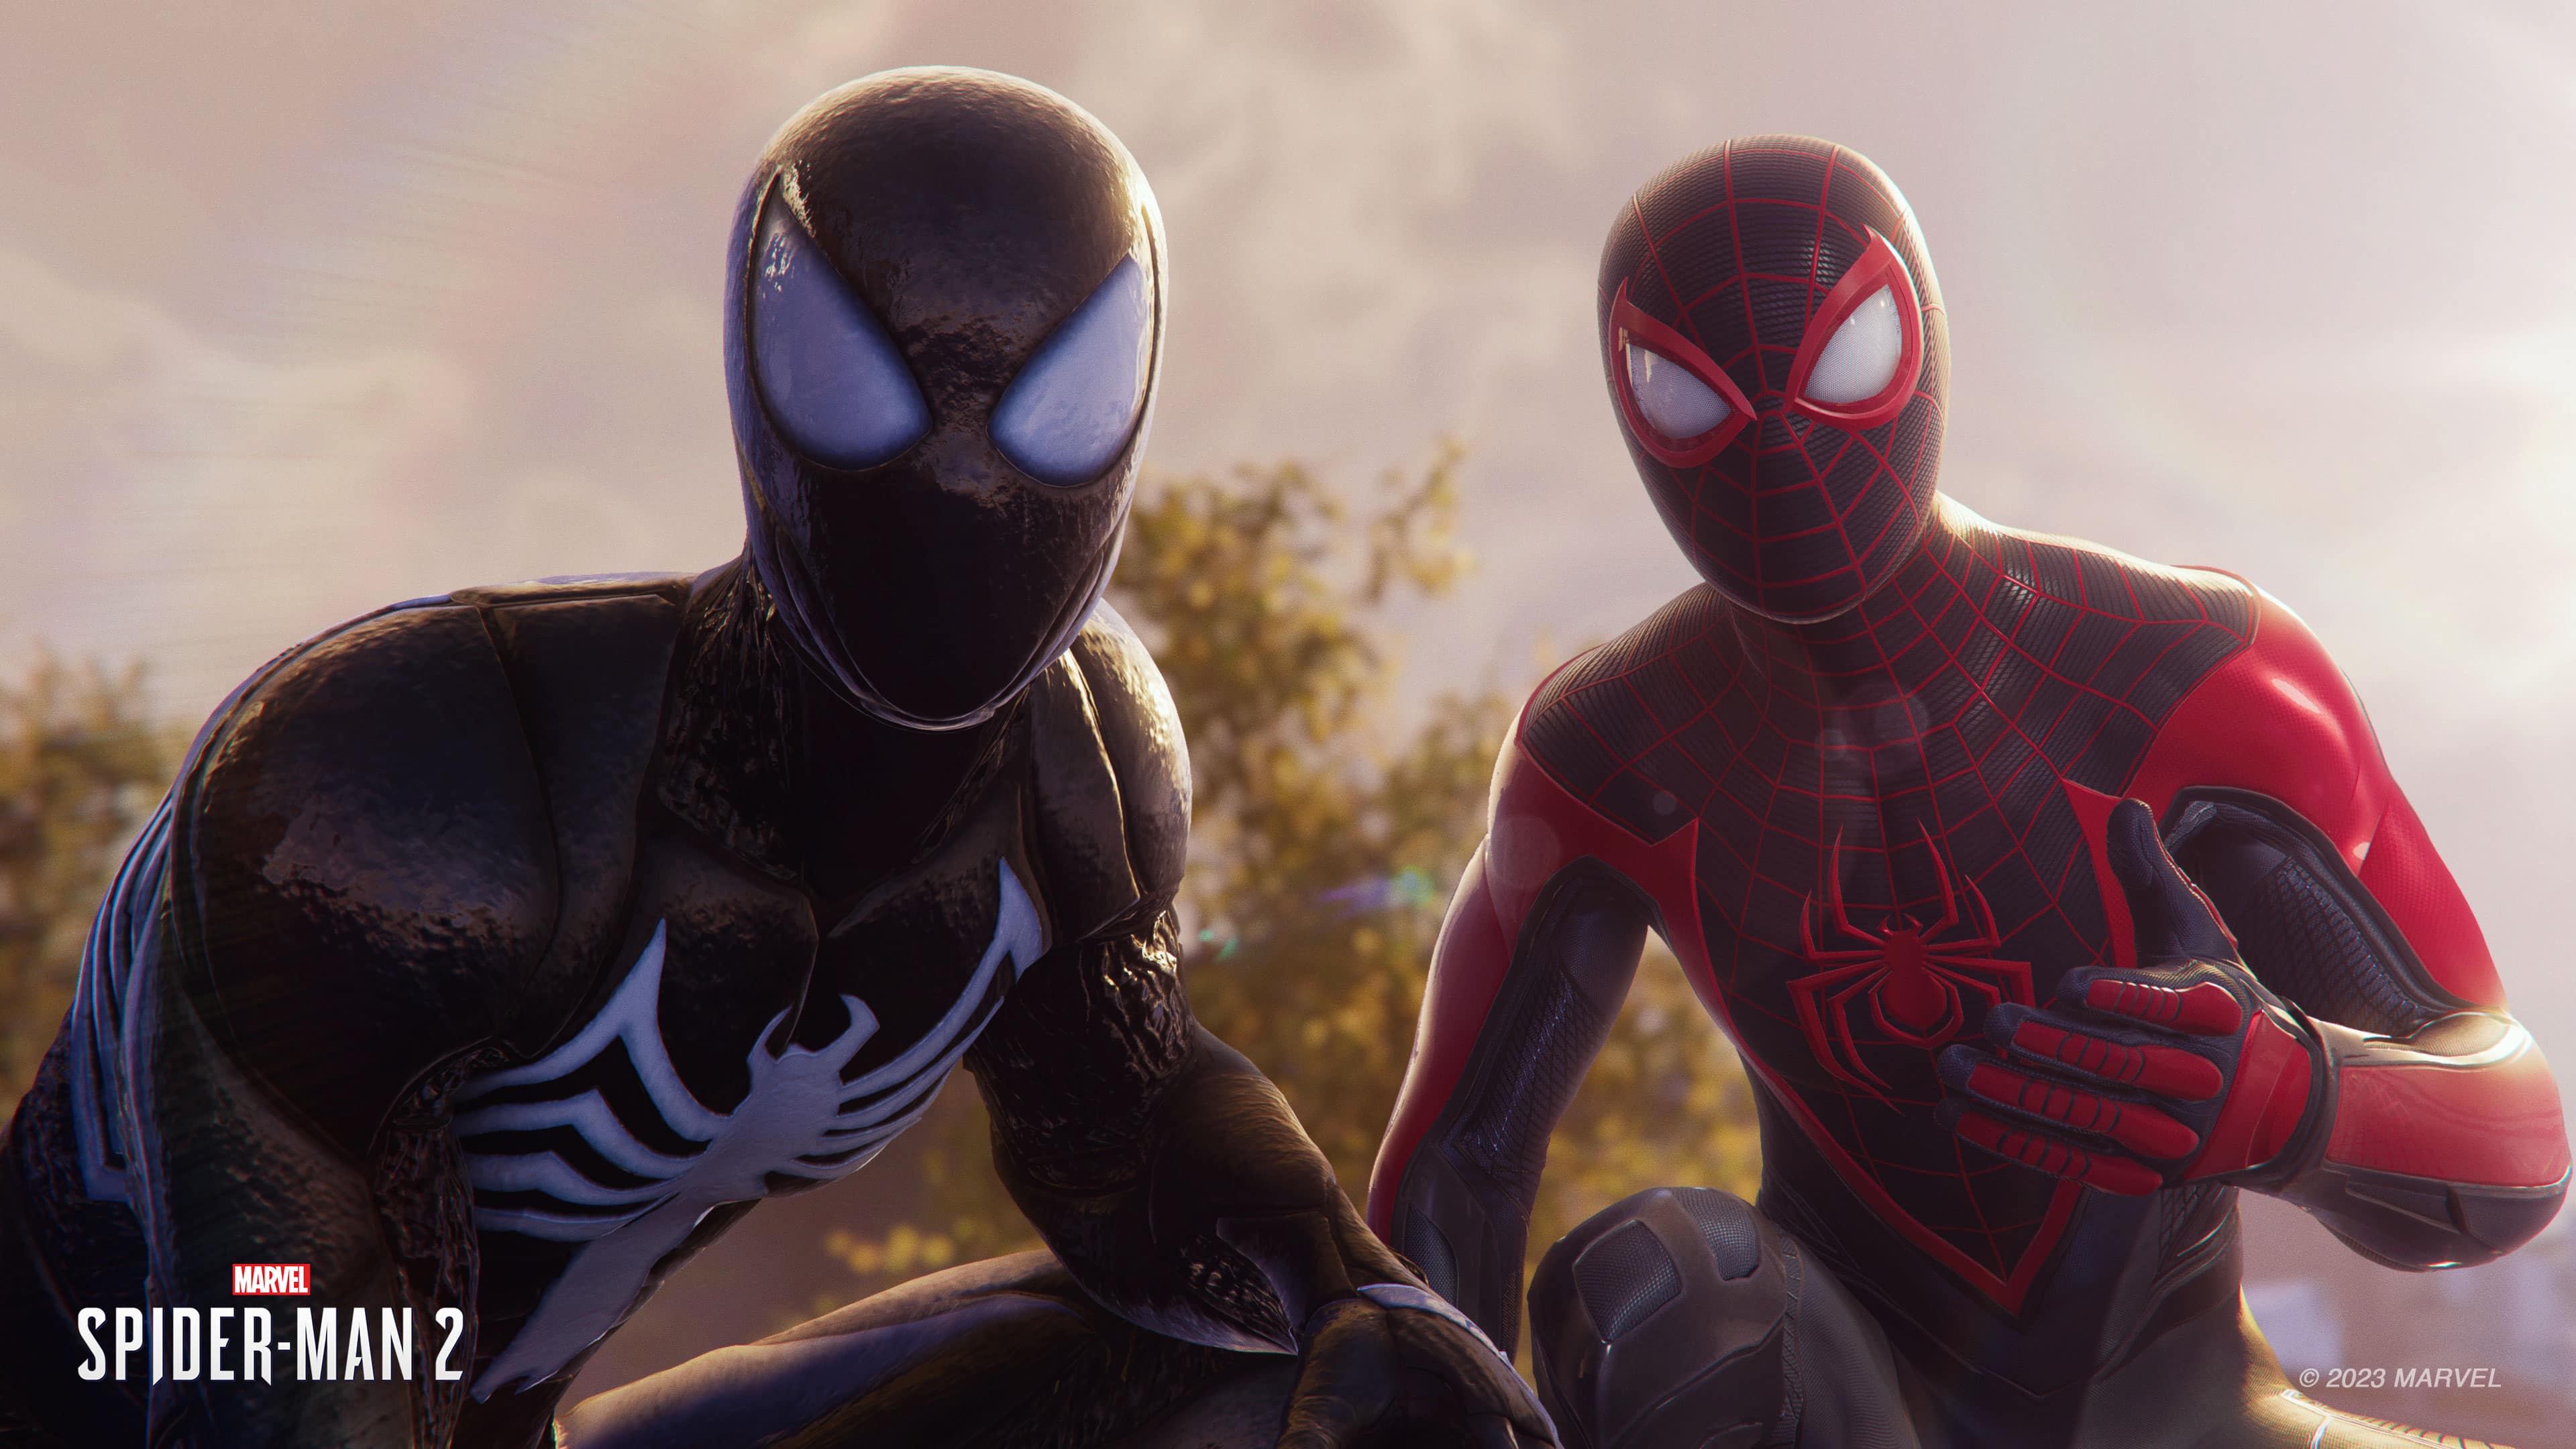 Mode photo de Spider-Man 2 de Marvel